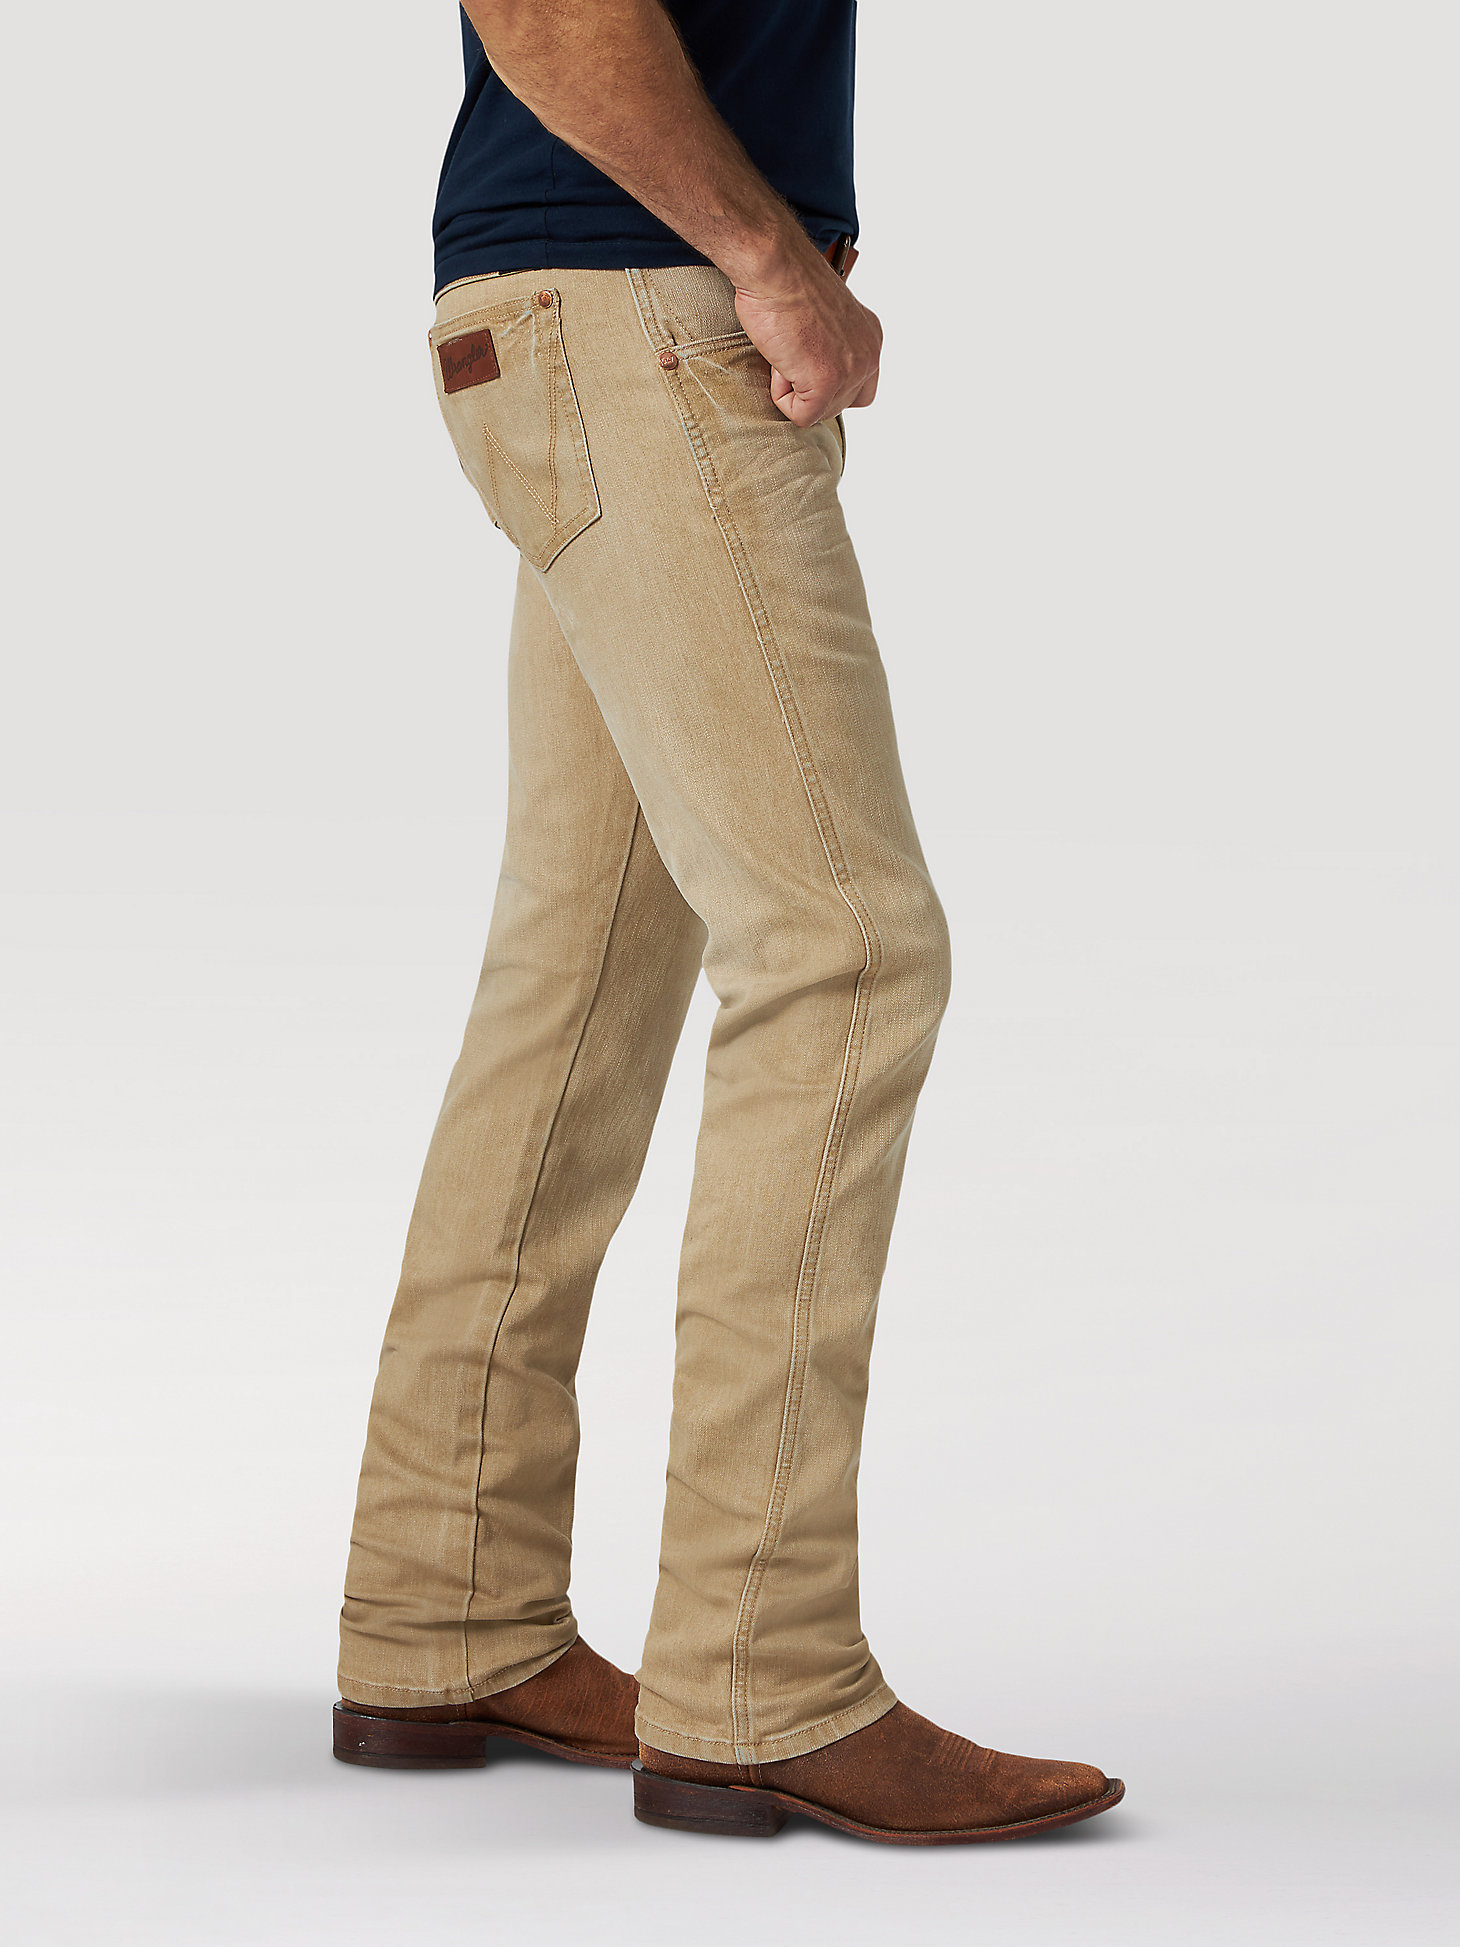 Men's Wrangler Retro® Premium Slim Fit Straight Leg Jean in Tan alternative view 1